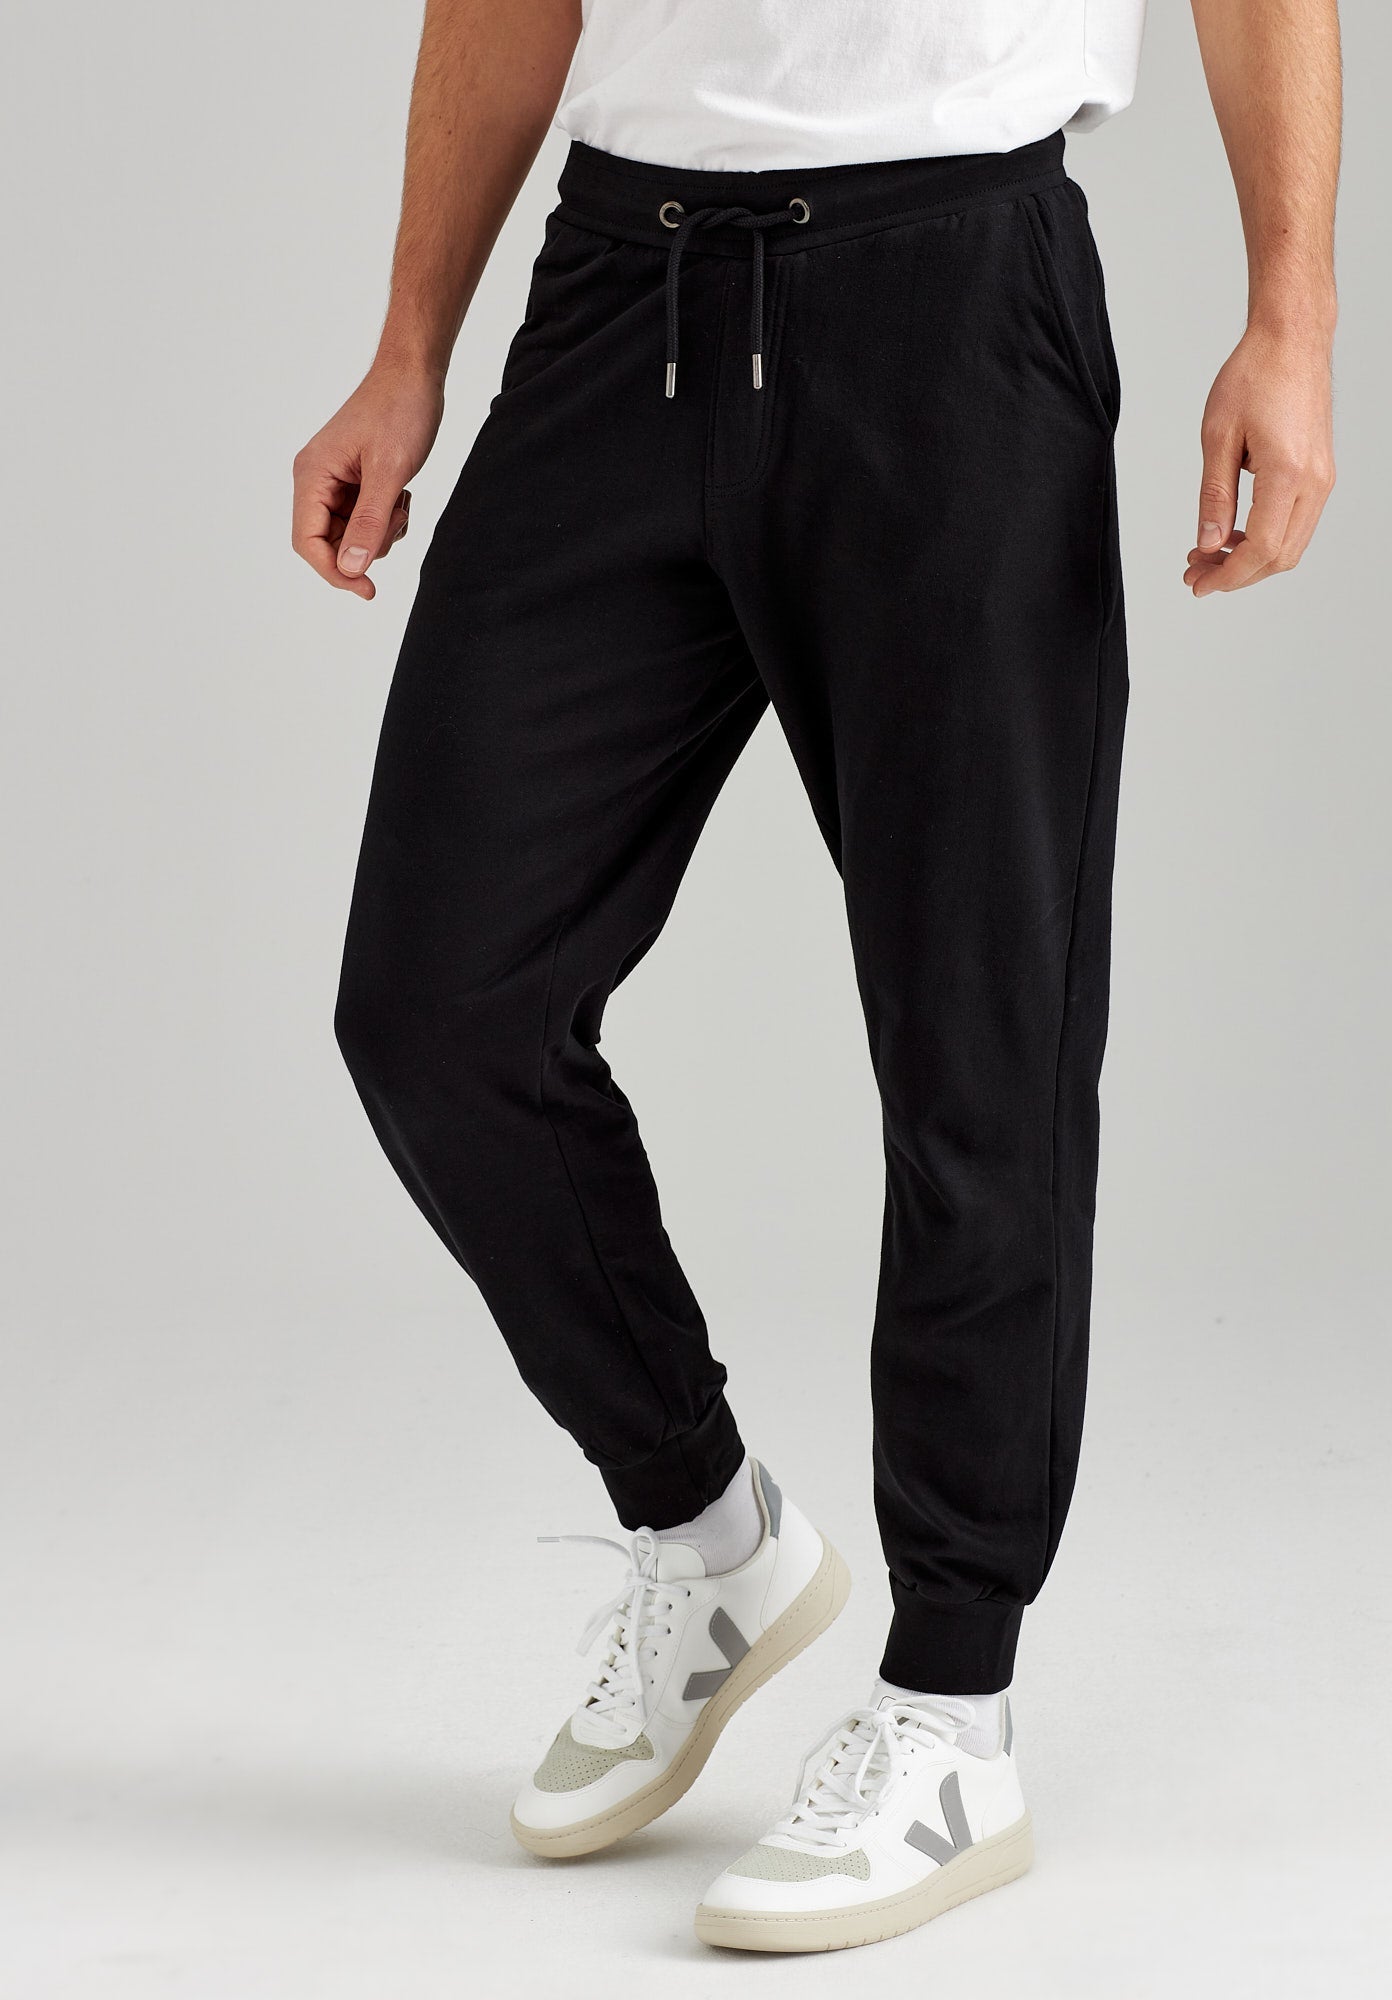 Black organic cotton jogging pants TT1010 from Thokkthokk